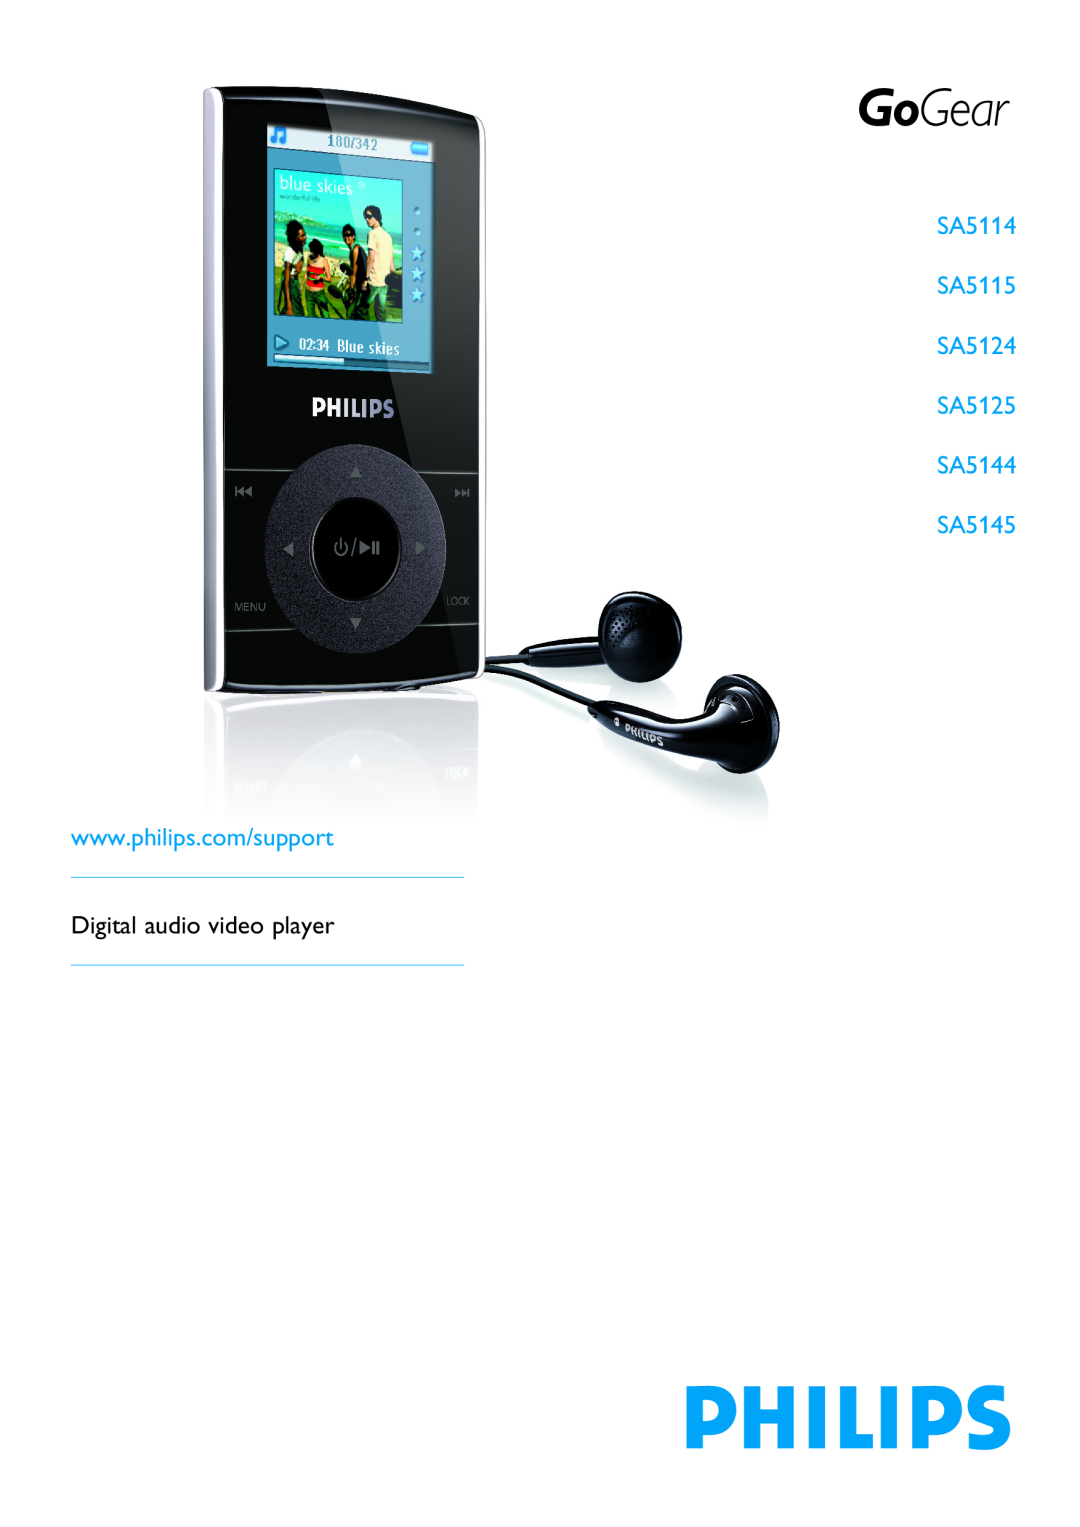 Philips manual SA5114 SA5115 SA5124 SA5125 SA5144 SA5145, Digital audio video player 